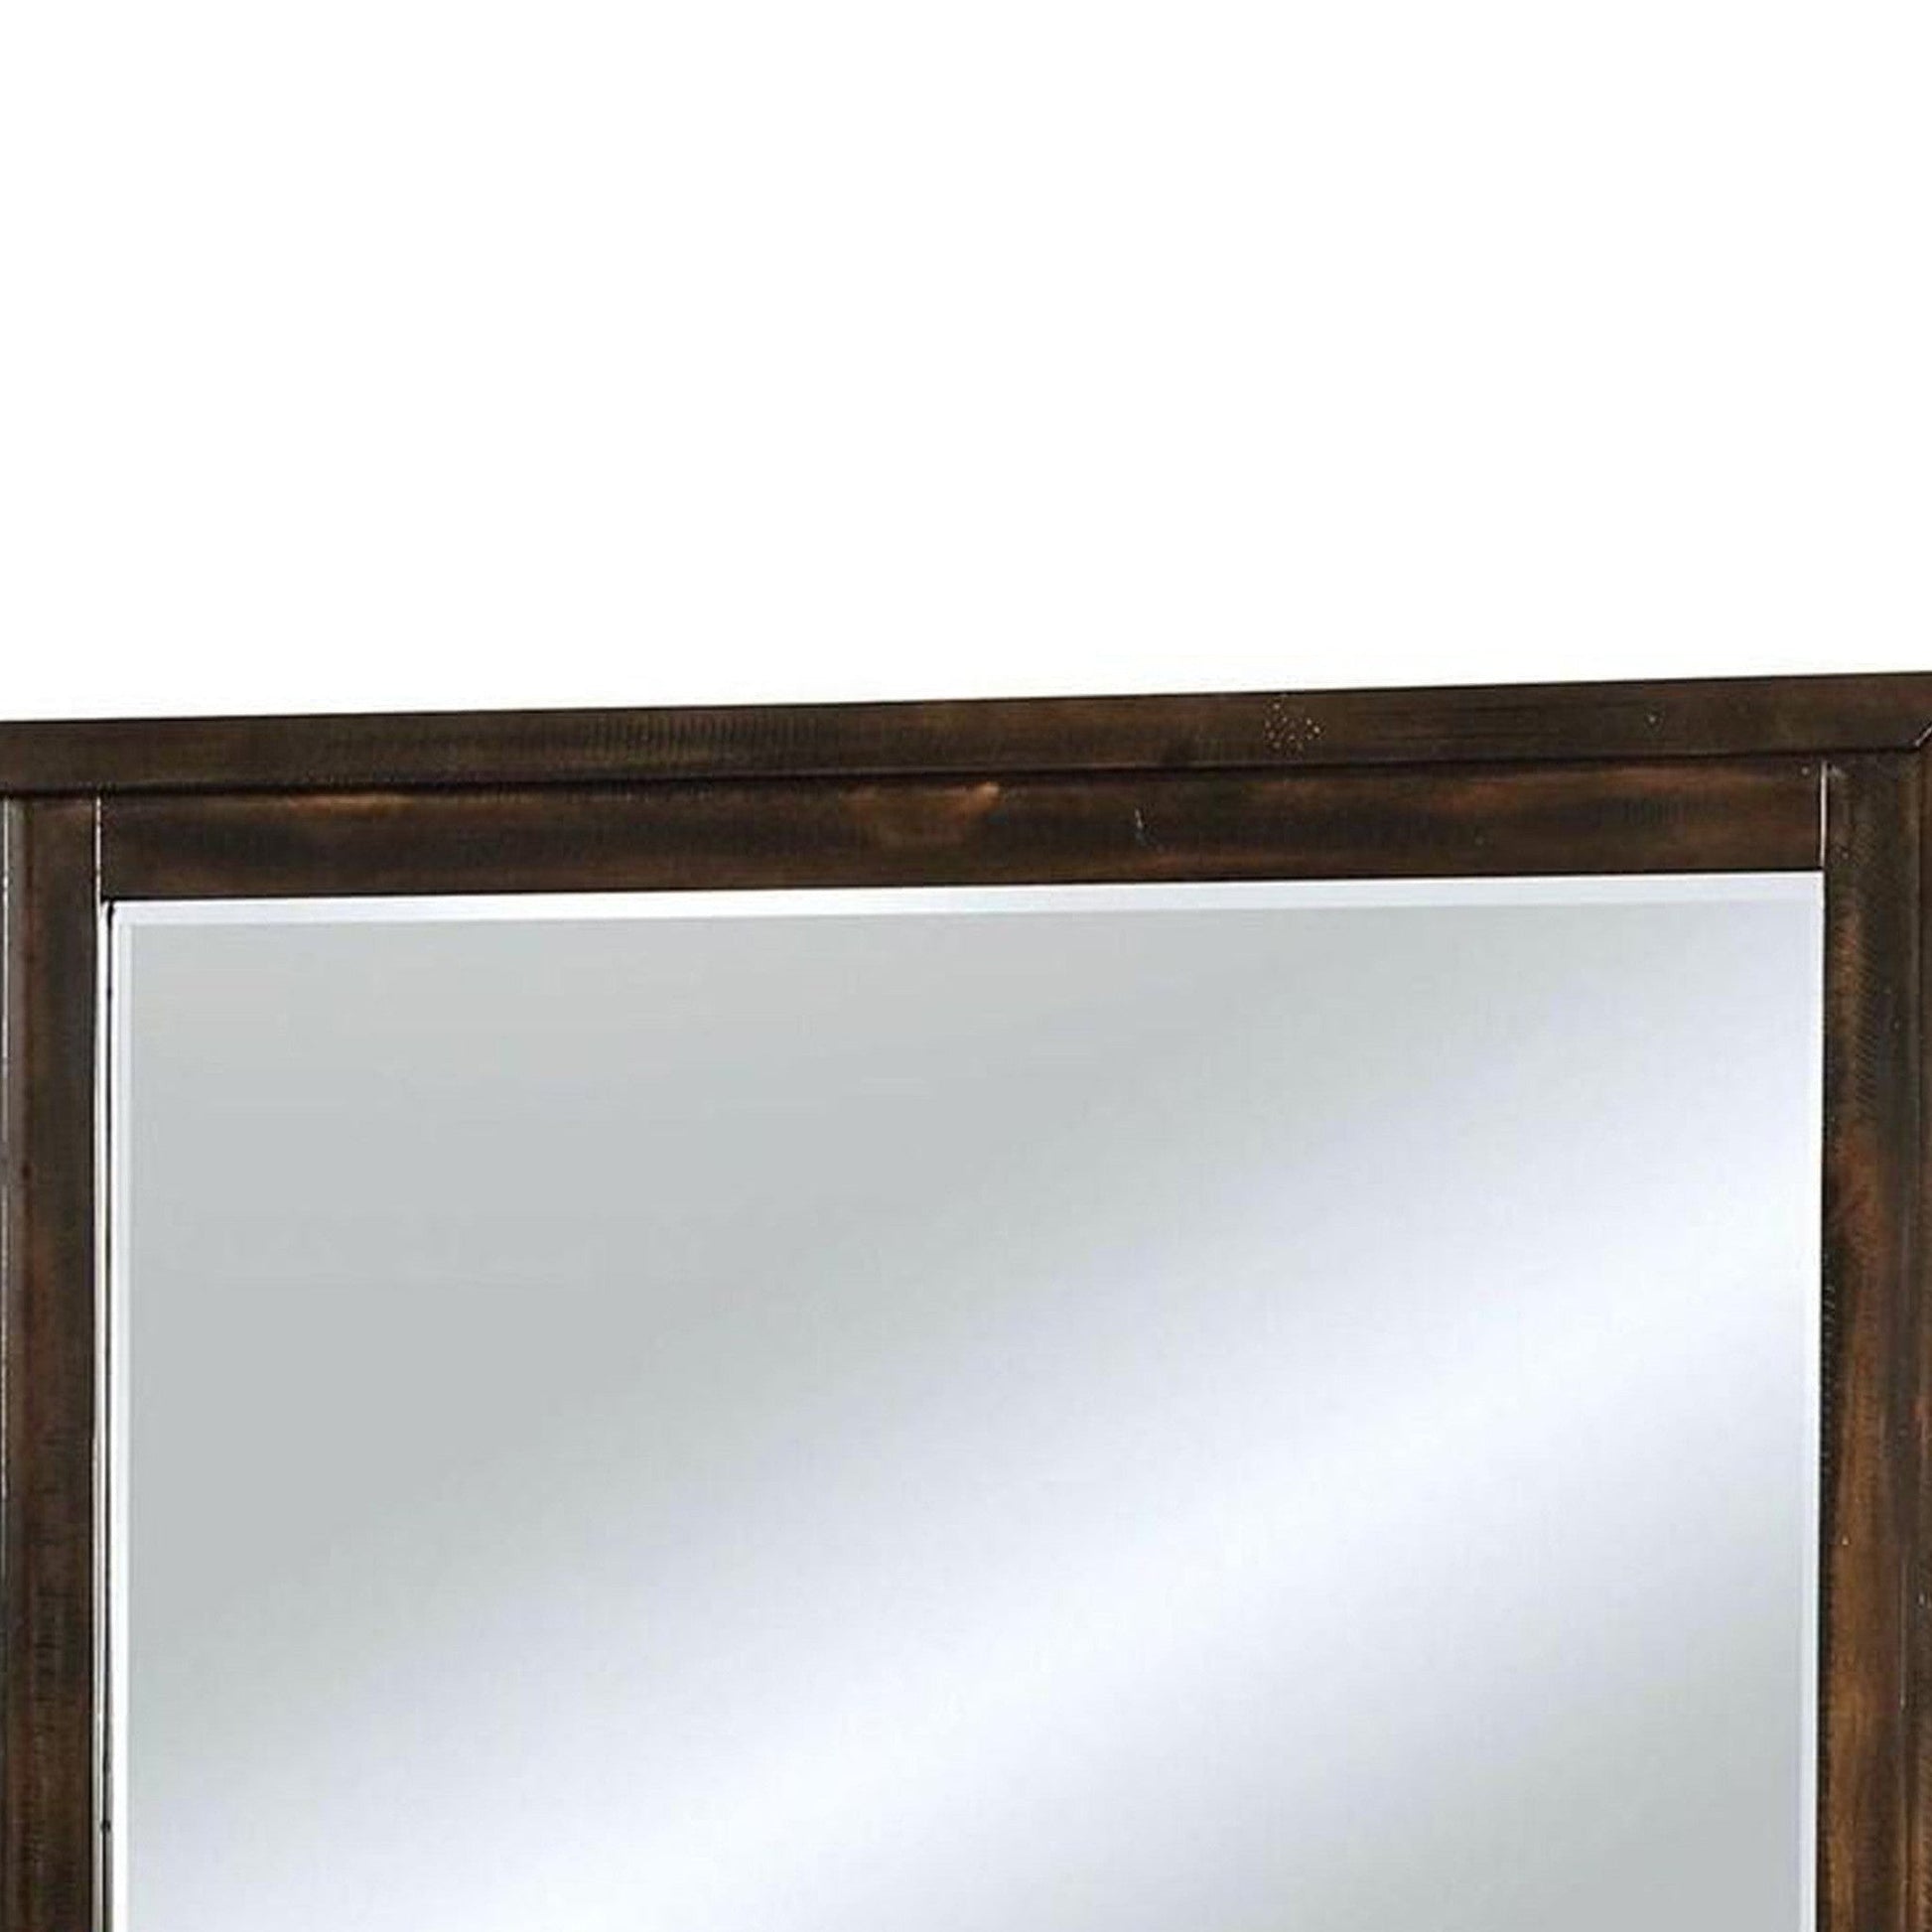 Benzara 46" Dark Brown Transitional Style Wooden Frame Mirror